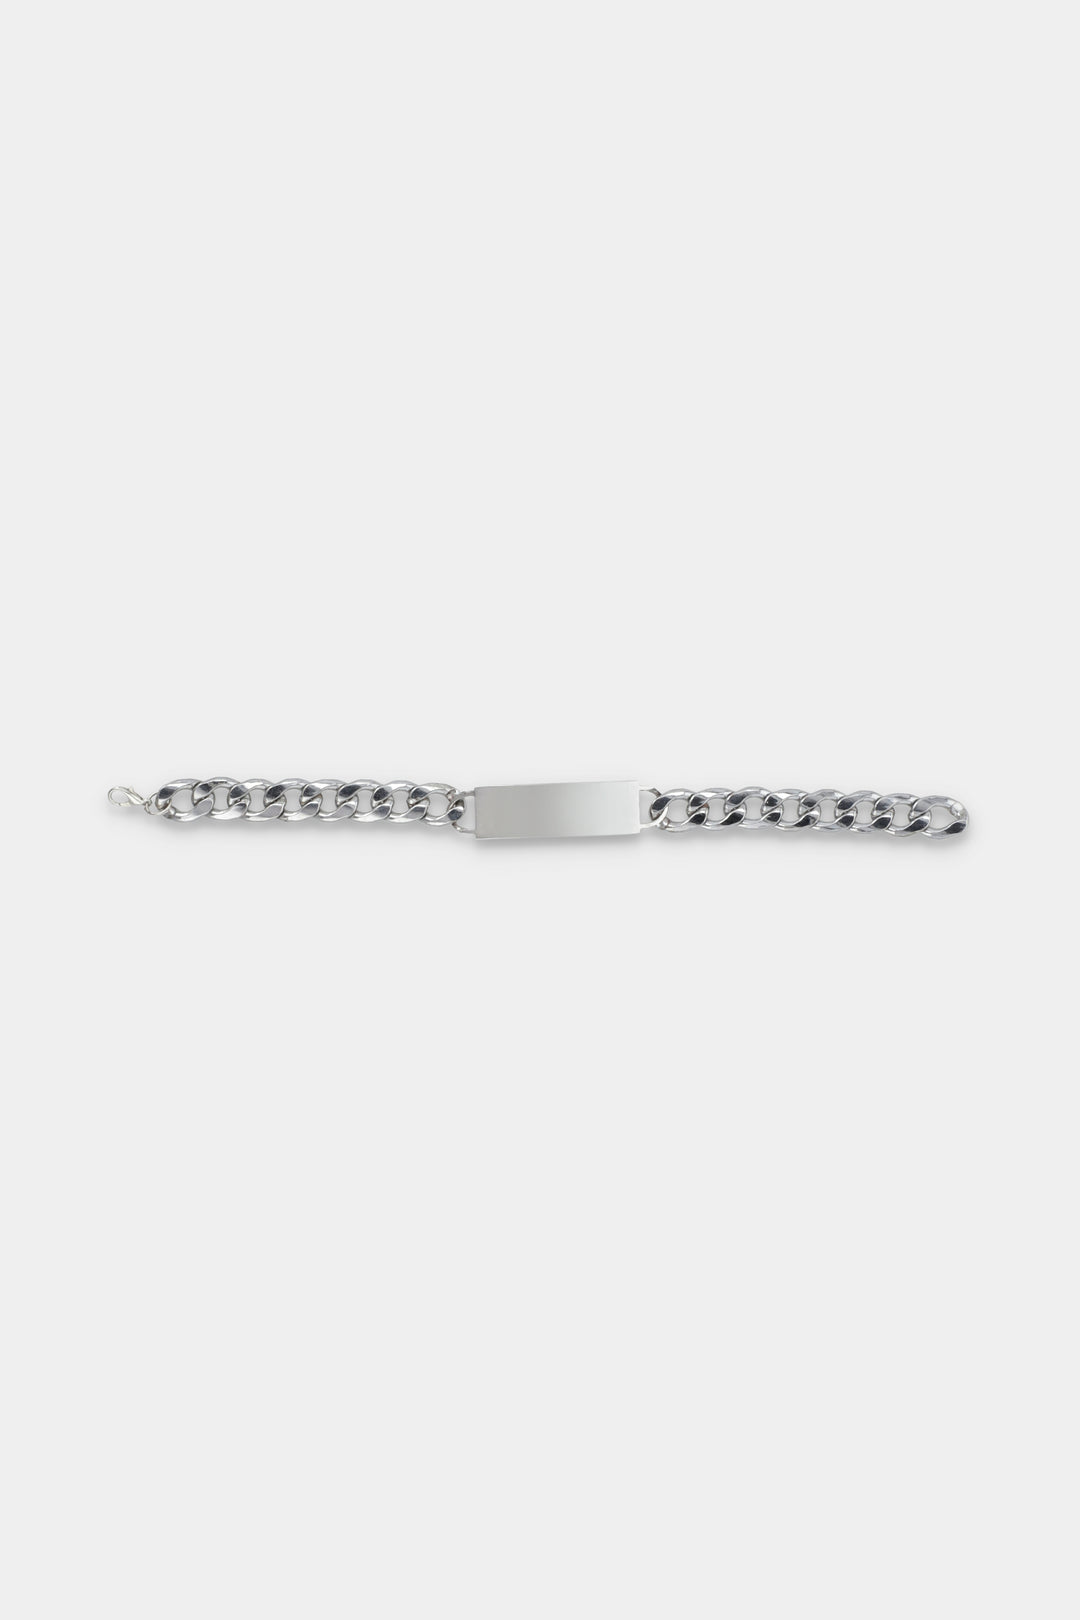 Silver Steel Bracelet - W21 - MJW0014